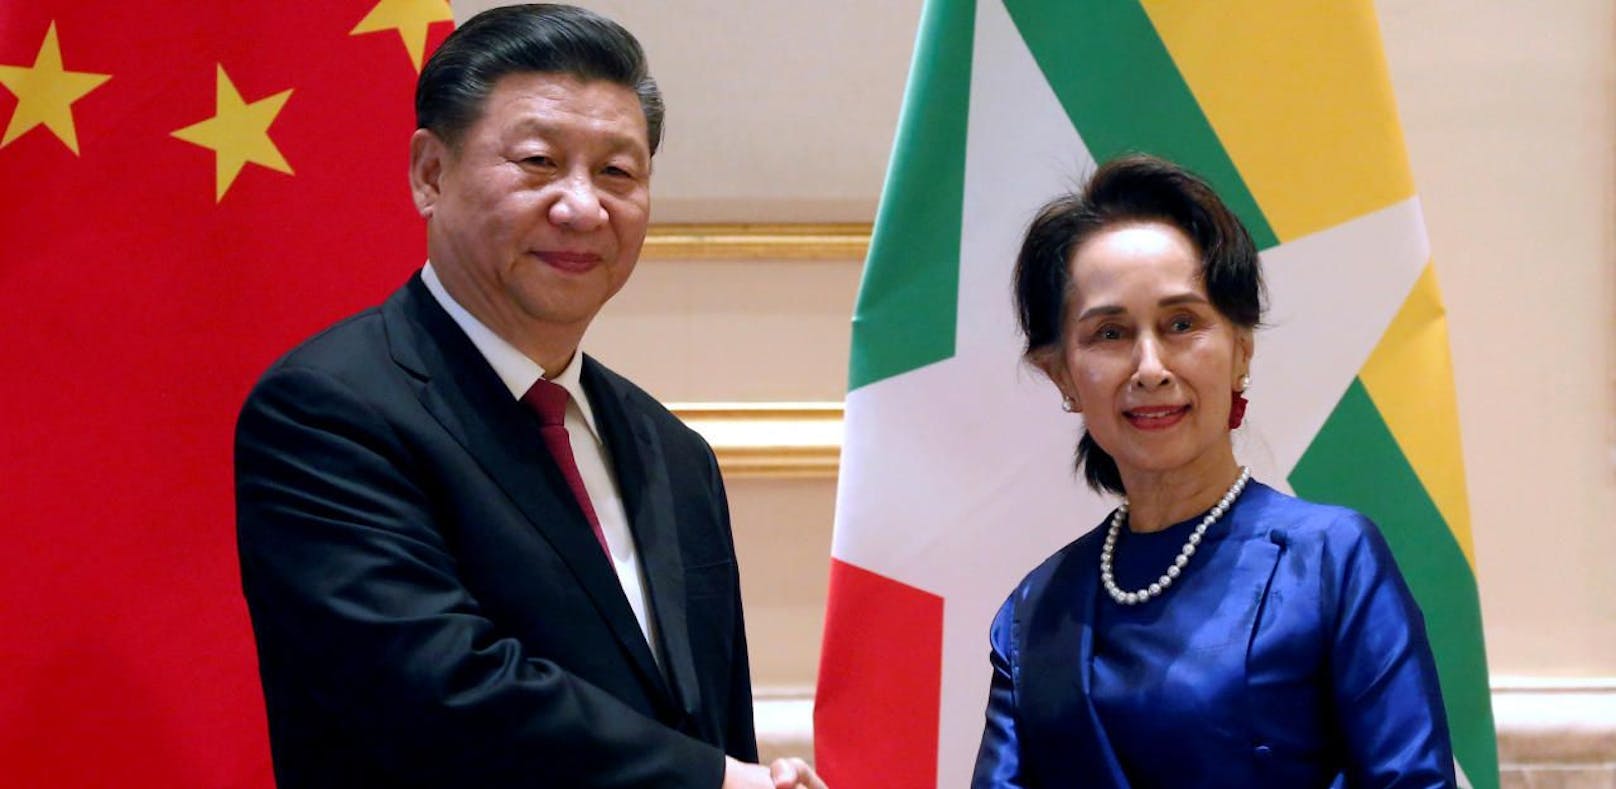 Facebook nennt Chinas Präsident "Sch****loch"